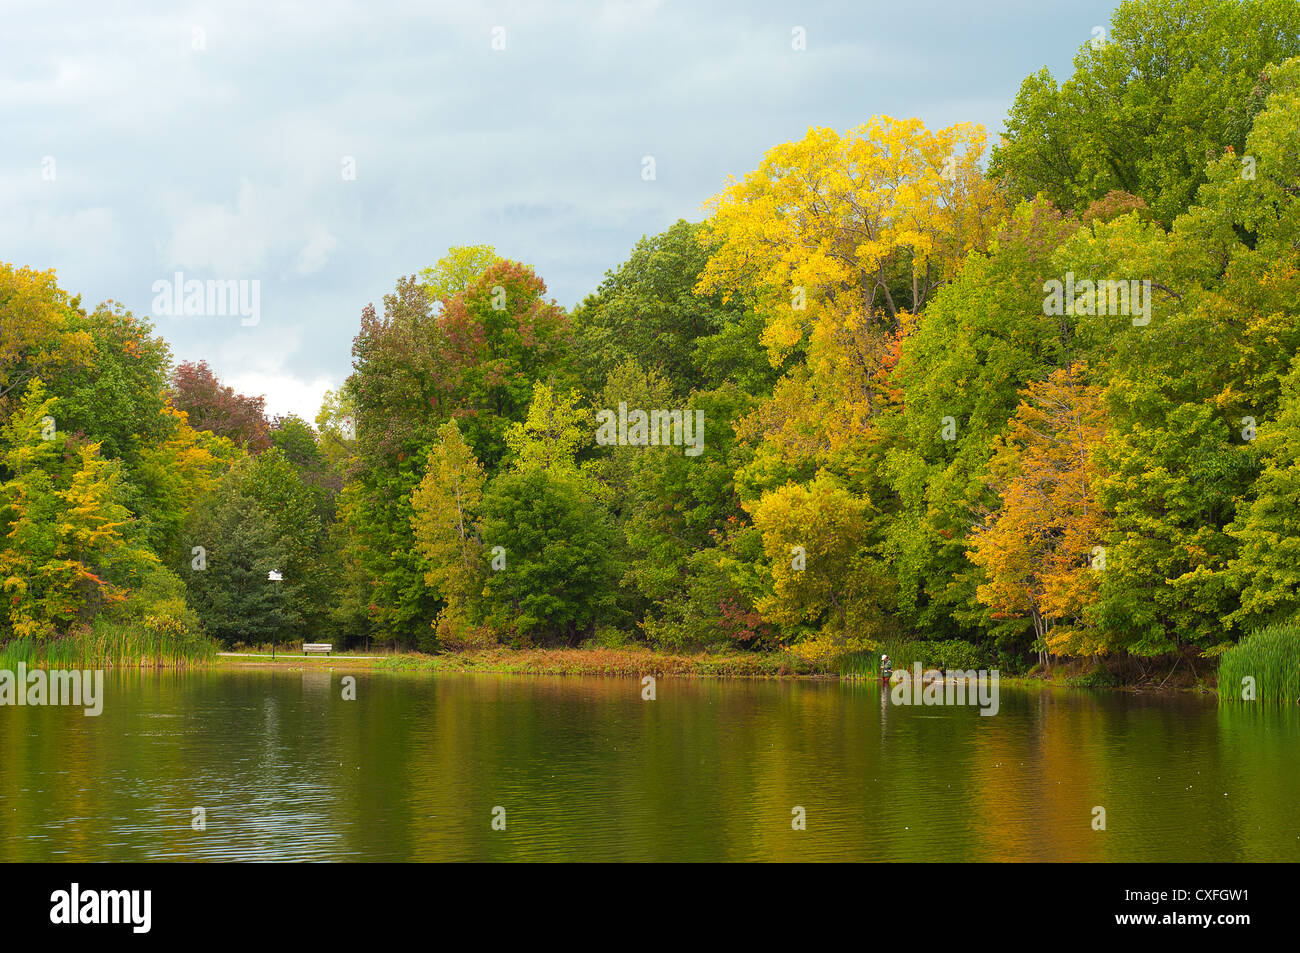 Bella immagine di caduta di alberi a lago con una persona la pesca dal litorale con una casetta per uccelli Foto Stock